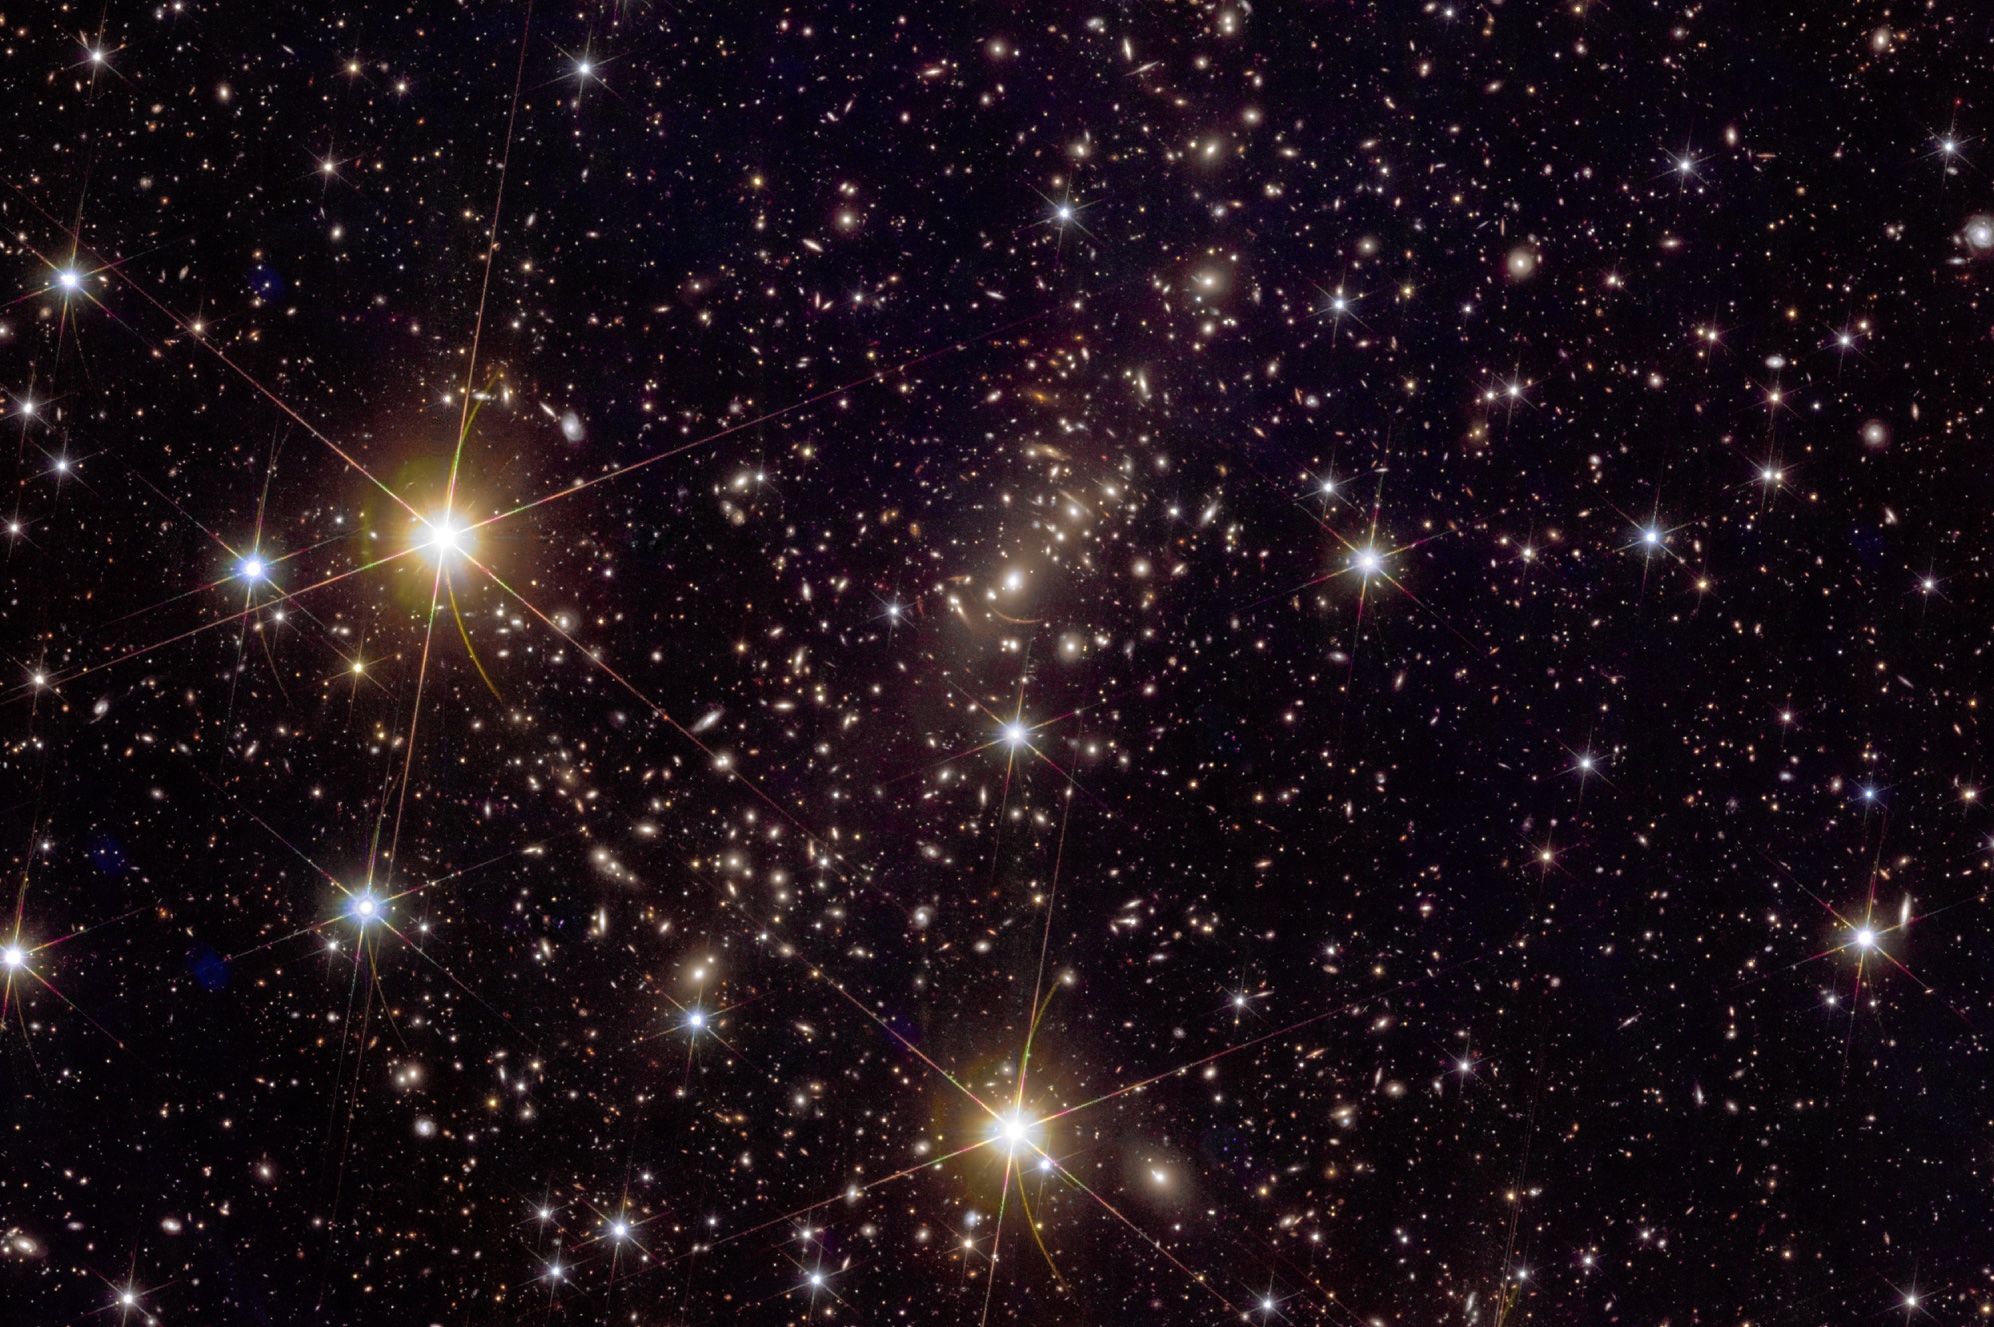 Az NGC6744 galaxis a Euclid űrtávcső felvételén. A kép az eredeti egy kivágott részlete.